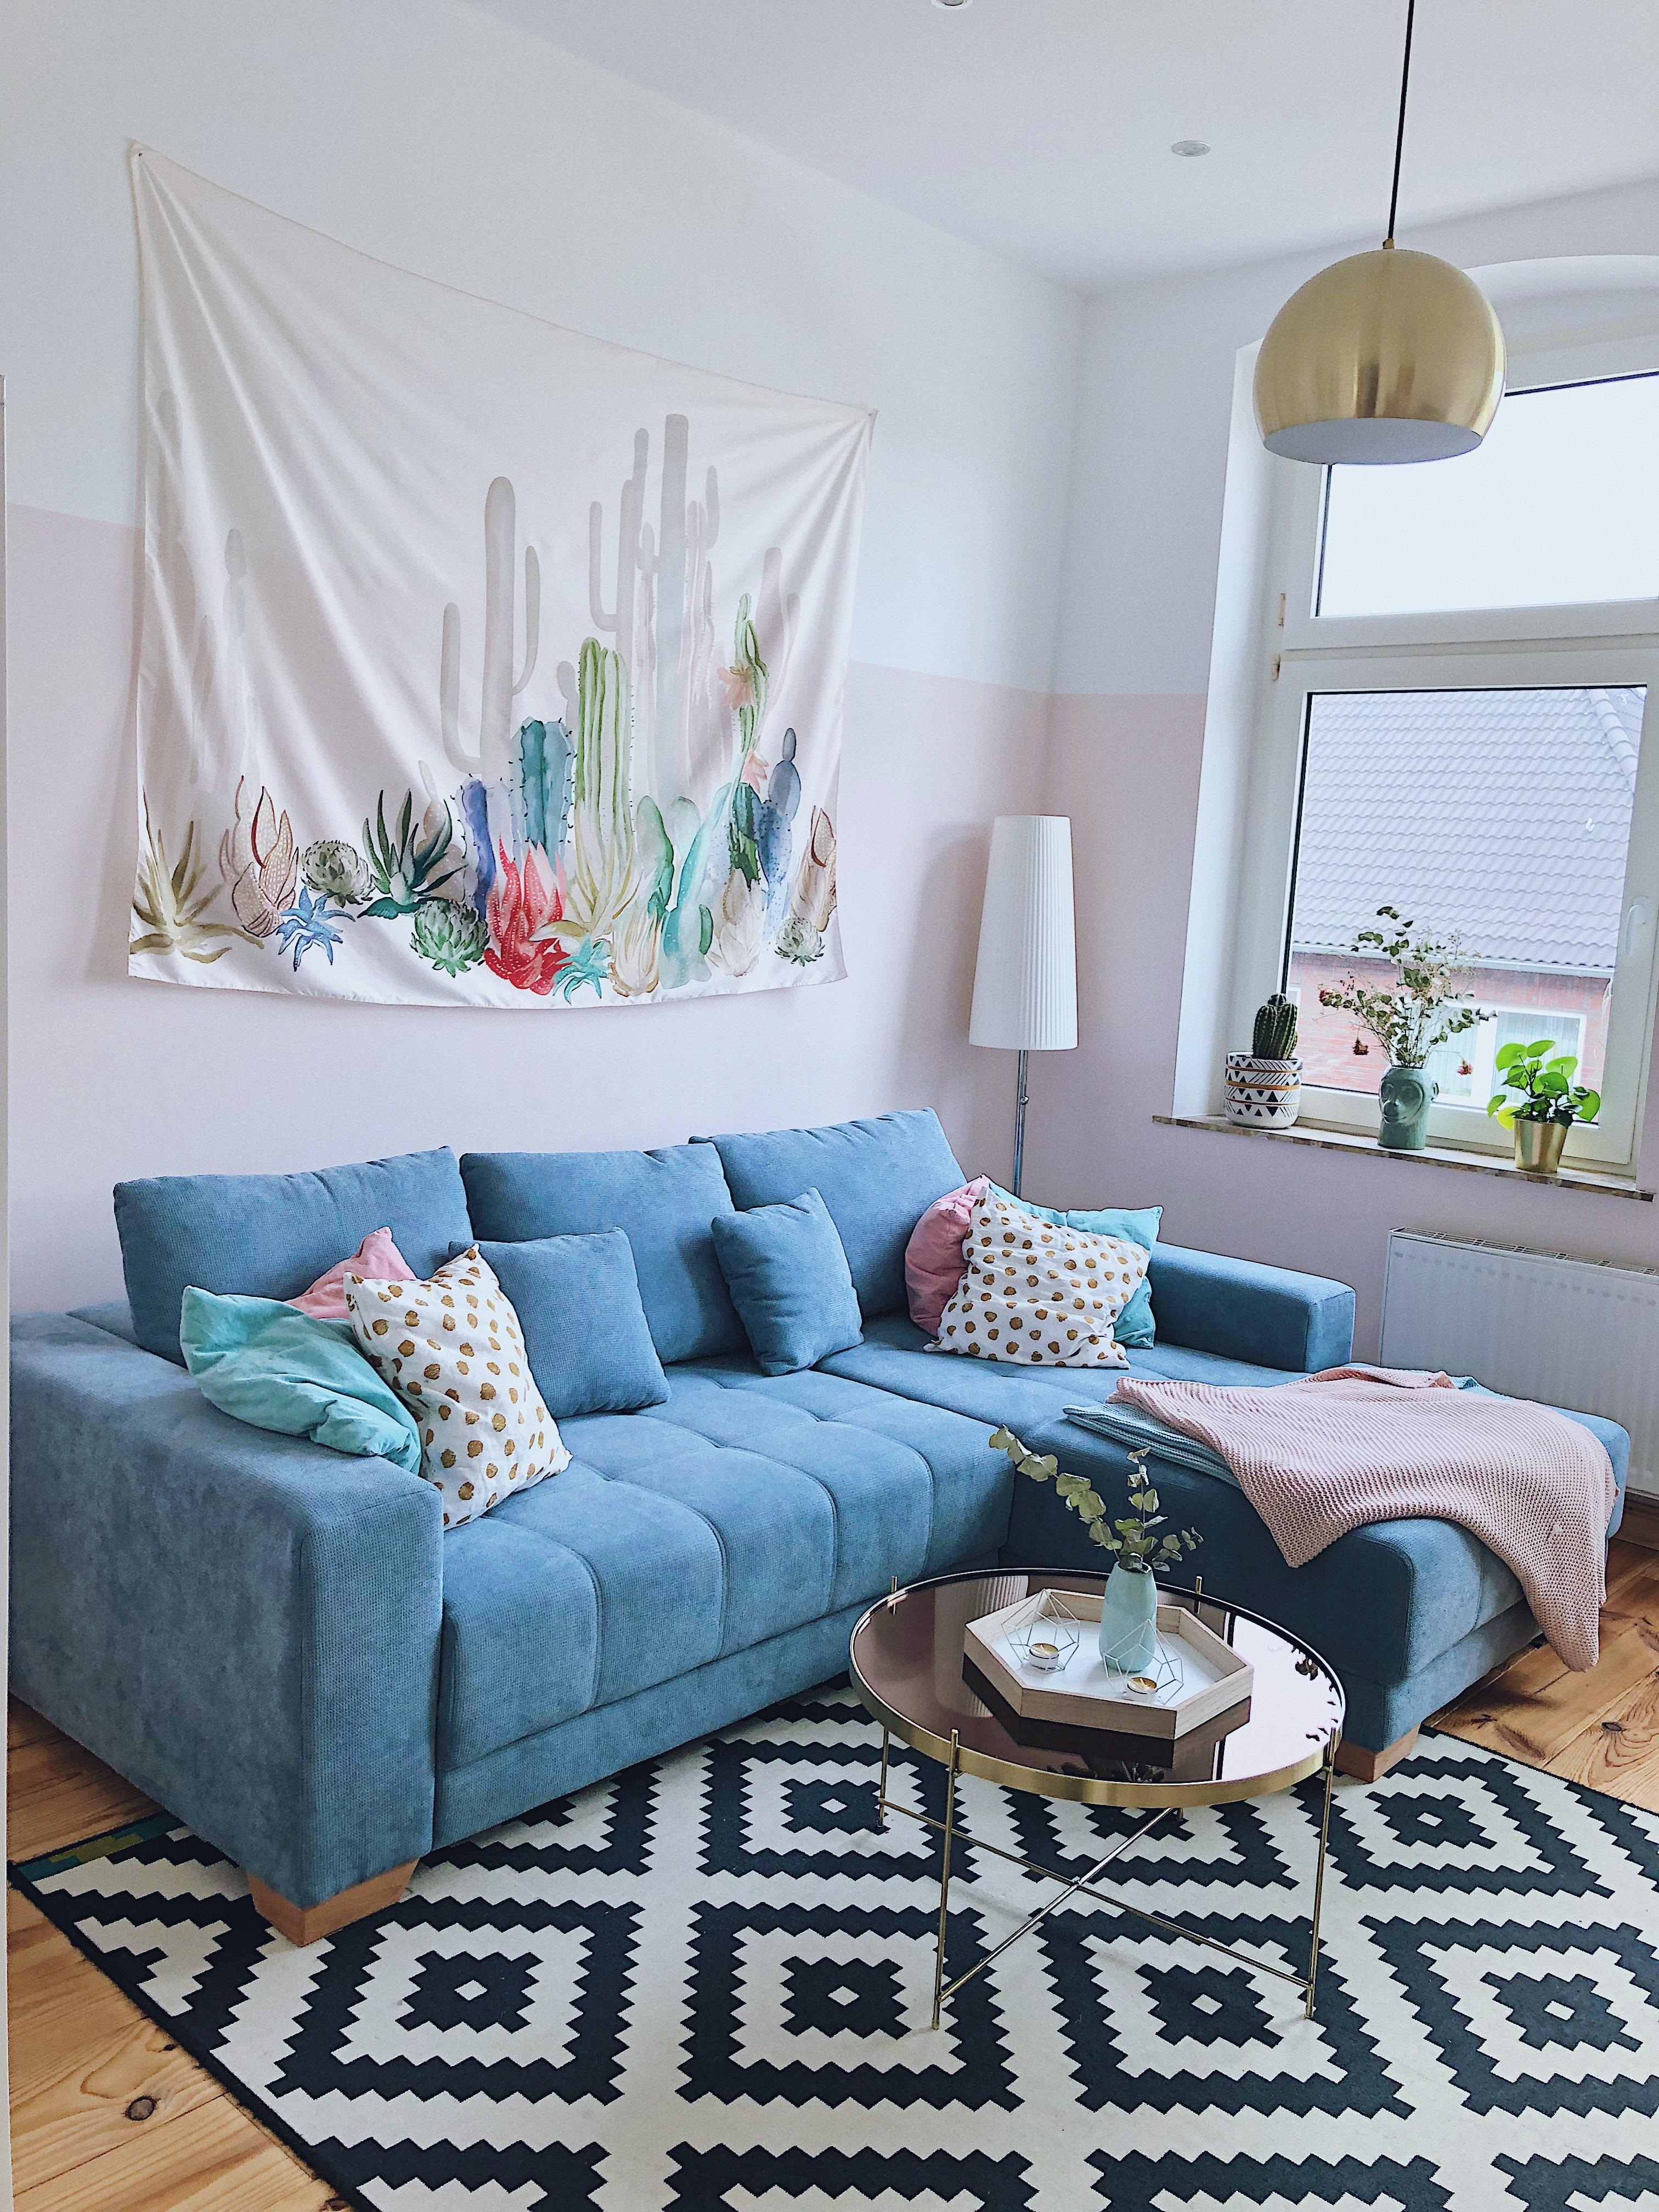 Unser buntes Wohnzimmer #interior #pastel #altbau #dielenboden #gold #blau #wohnzimmer #rosa #kaktus 